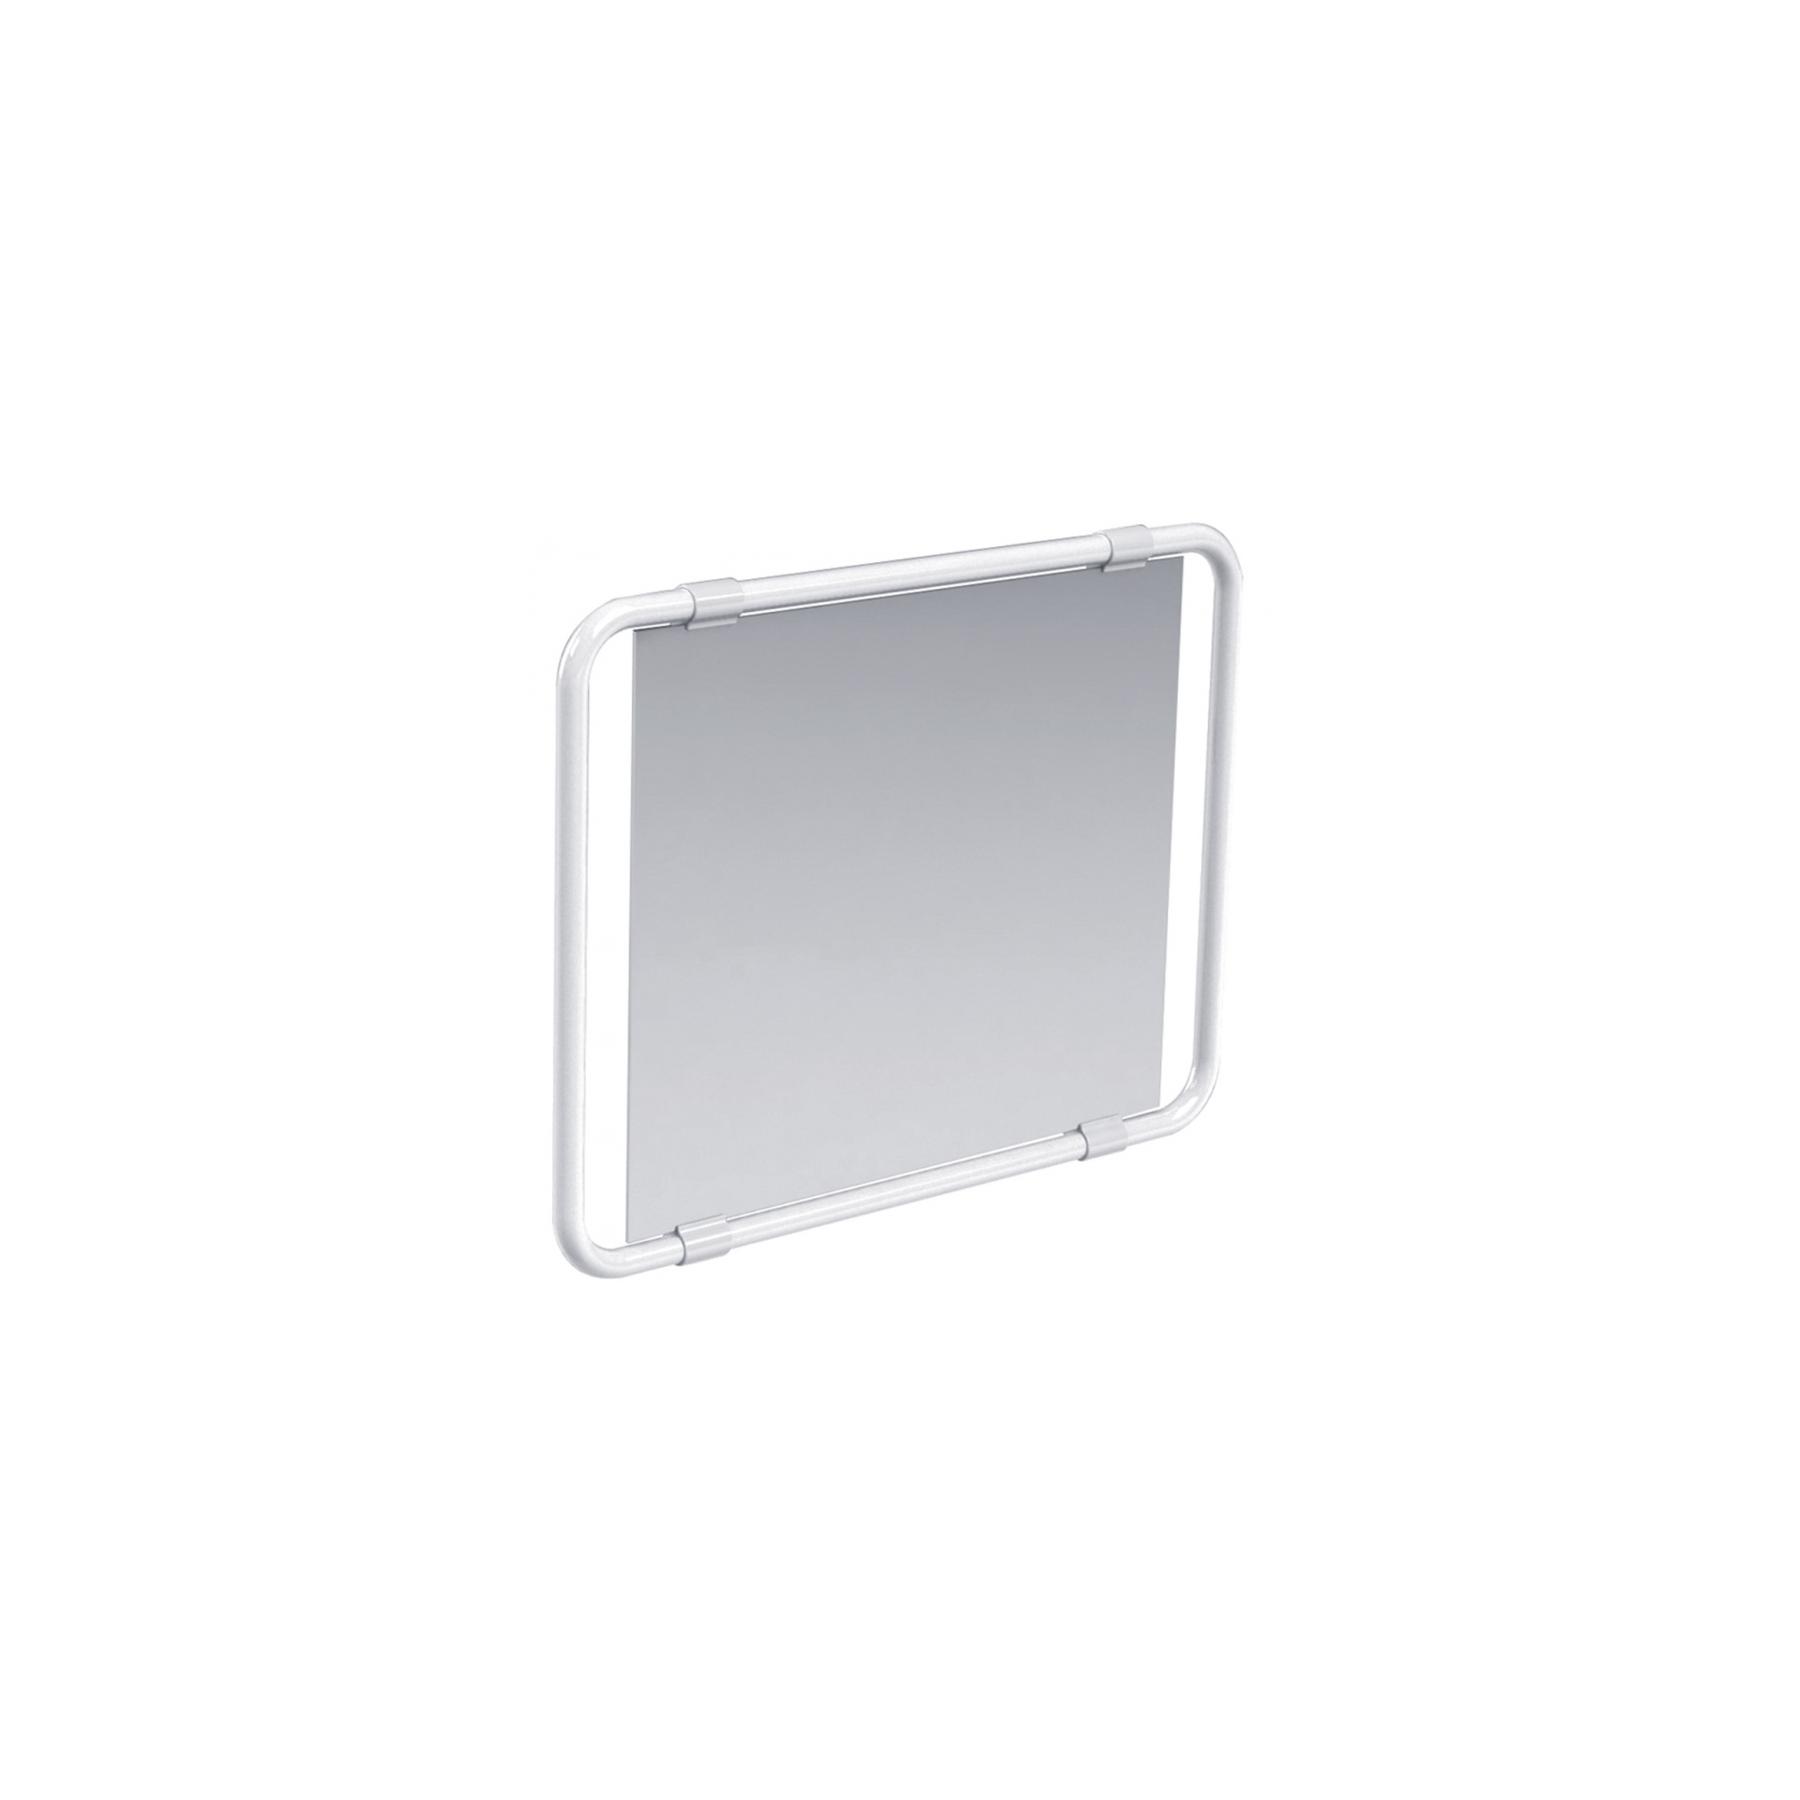 Miroir orientable Gamme PRO PELLET 60 x 50 cm multidirectionnel avec poignée cadre alu Blanc